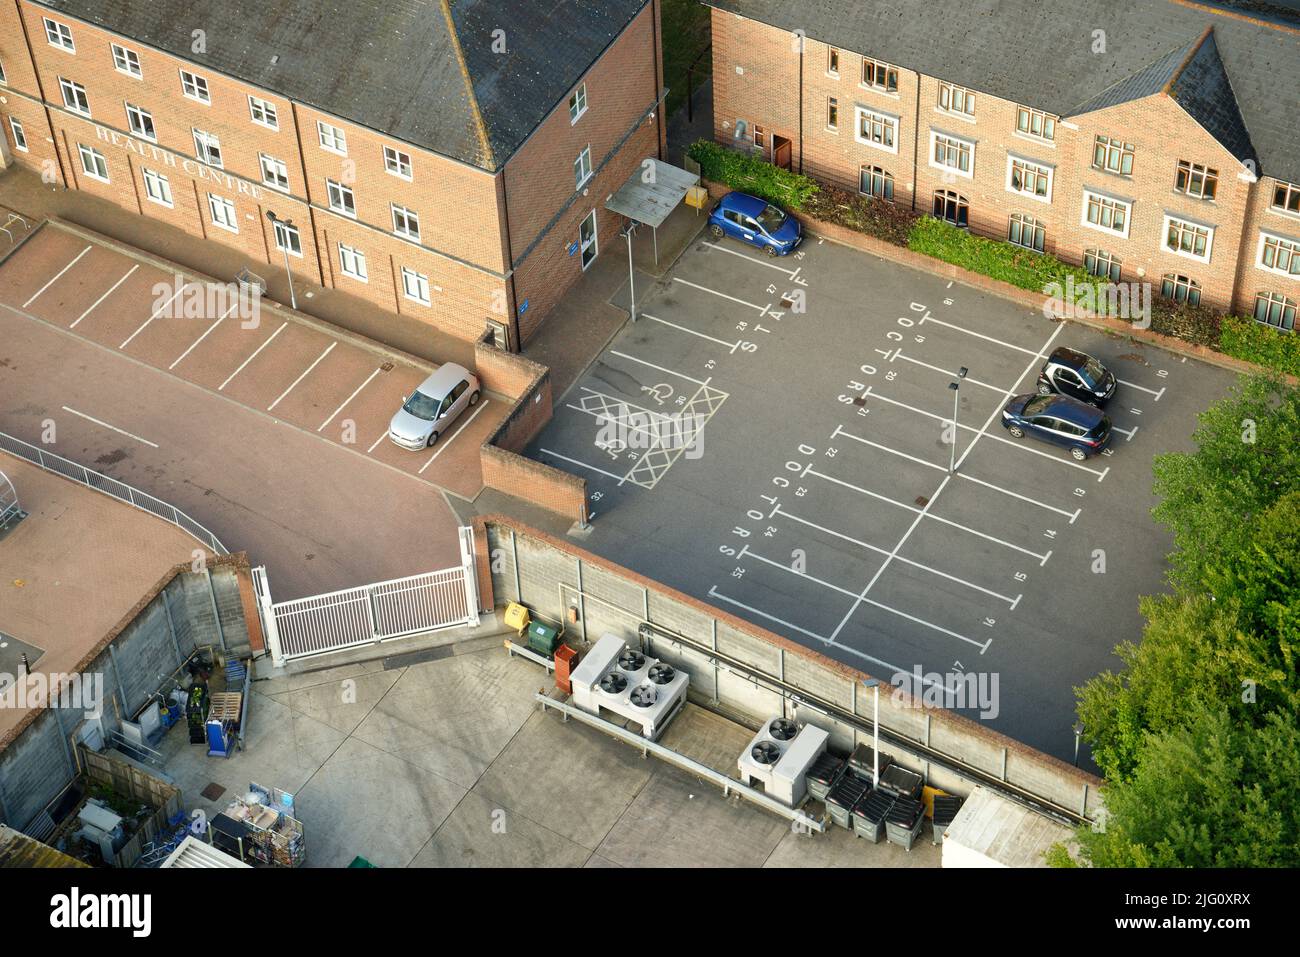 Un centro benessere inglese con un parcheggio auto quasi vuoto. Solo poche auto parcheggiate. Foto Stock